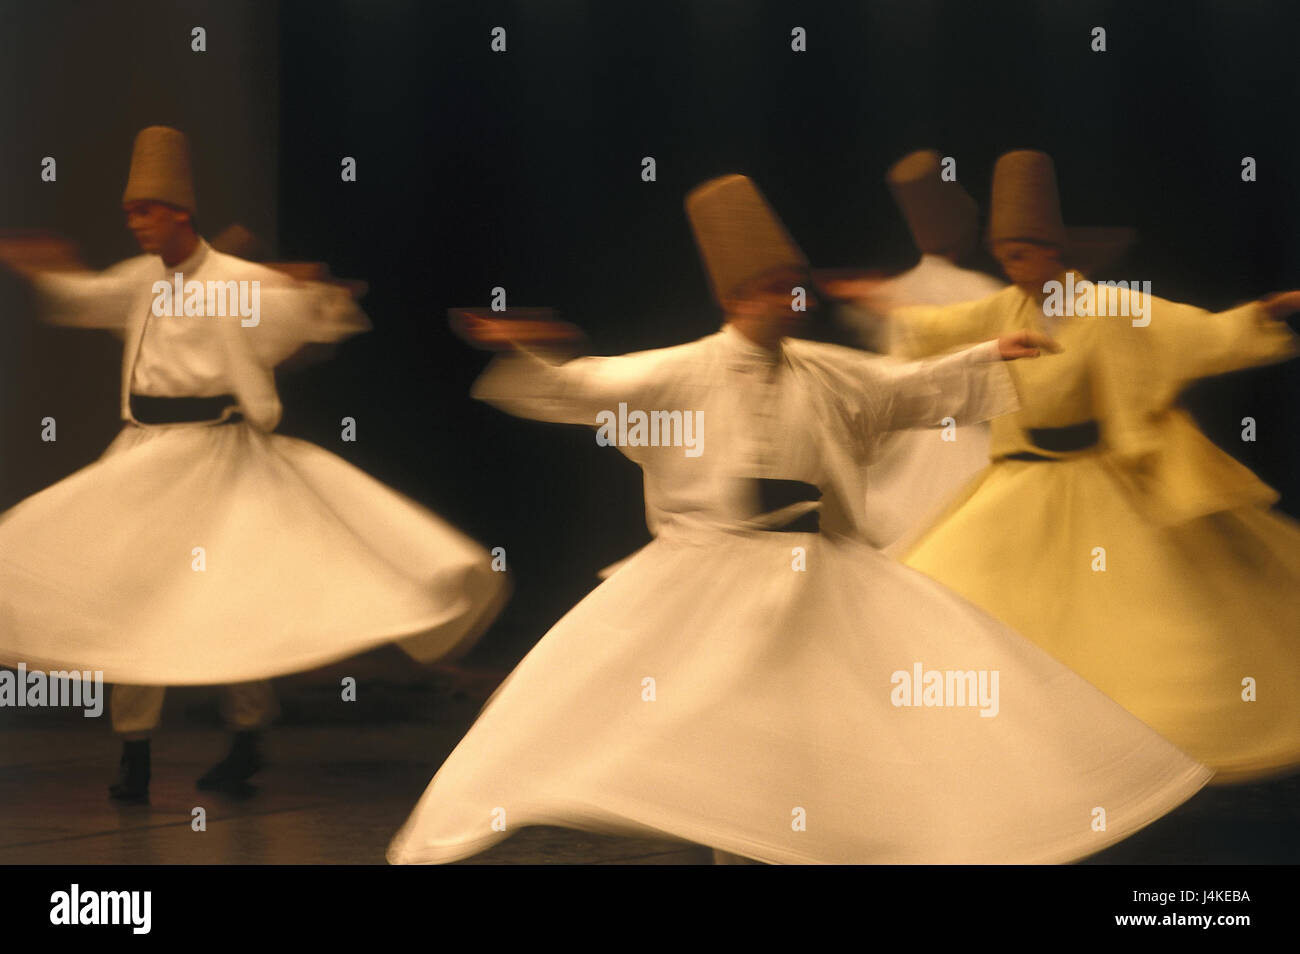 La Turquie, Konya, les derviches, danse, Inneranatolien dance group, groupe de folklore, folklore, les hommes, le Derviche danse, danse, tradition, traditions, compensation Soufi rouleau, performance, show, motion, motion blur, à l'intérieur Banque D'Images